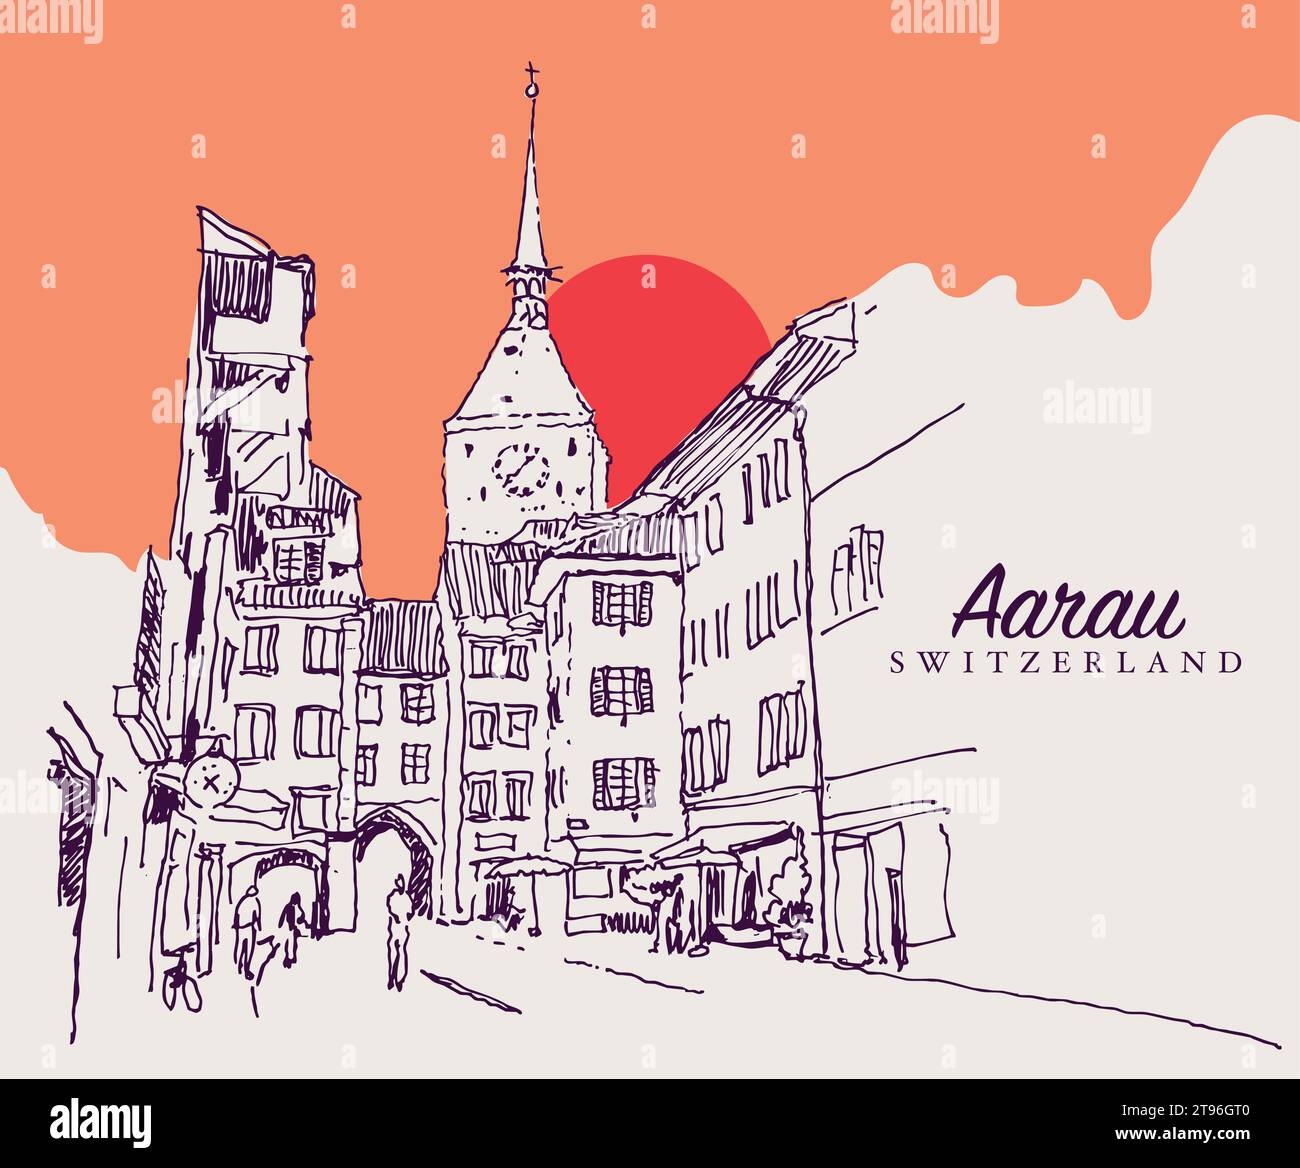 Disegno vettoriale disegnato a mano raffigurante una strada medievale nel cantone di Aarau in Svizzera. Illustrazione Vettoriale